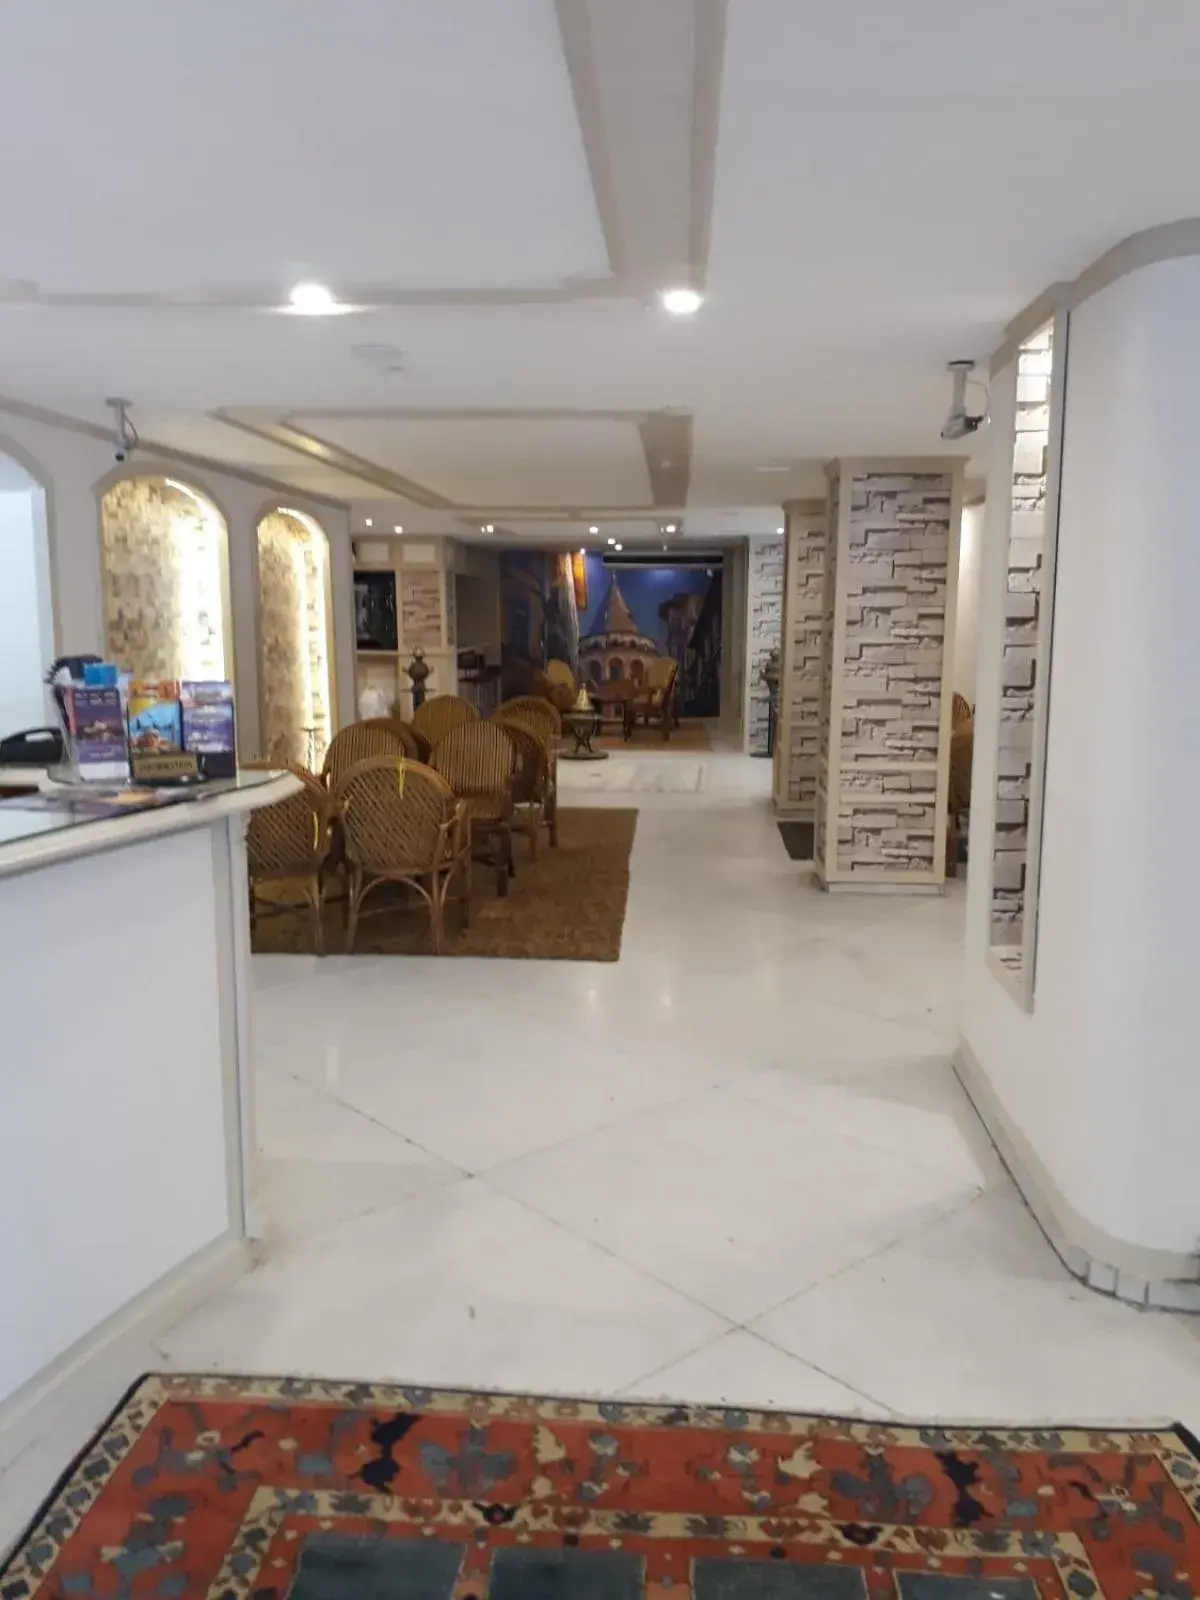 Lobby or reception, Lobby/Reception in Hali Hotel